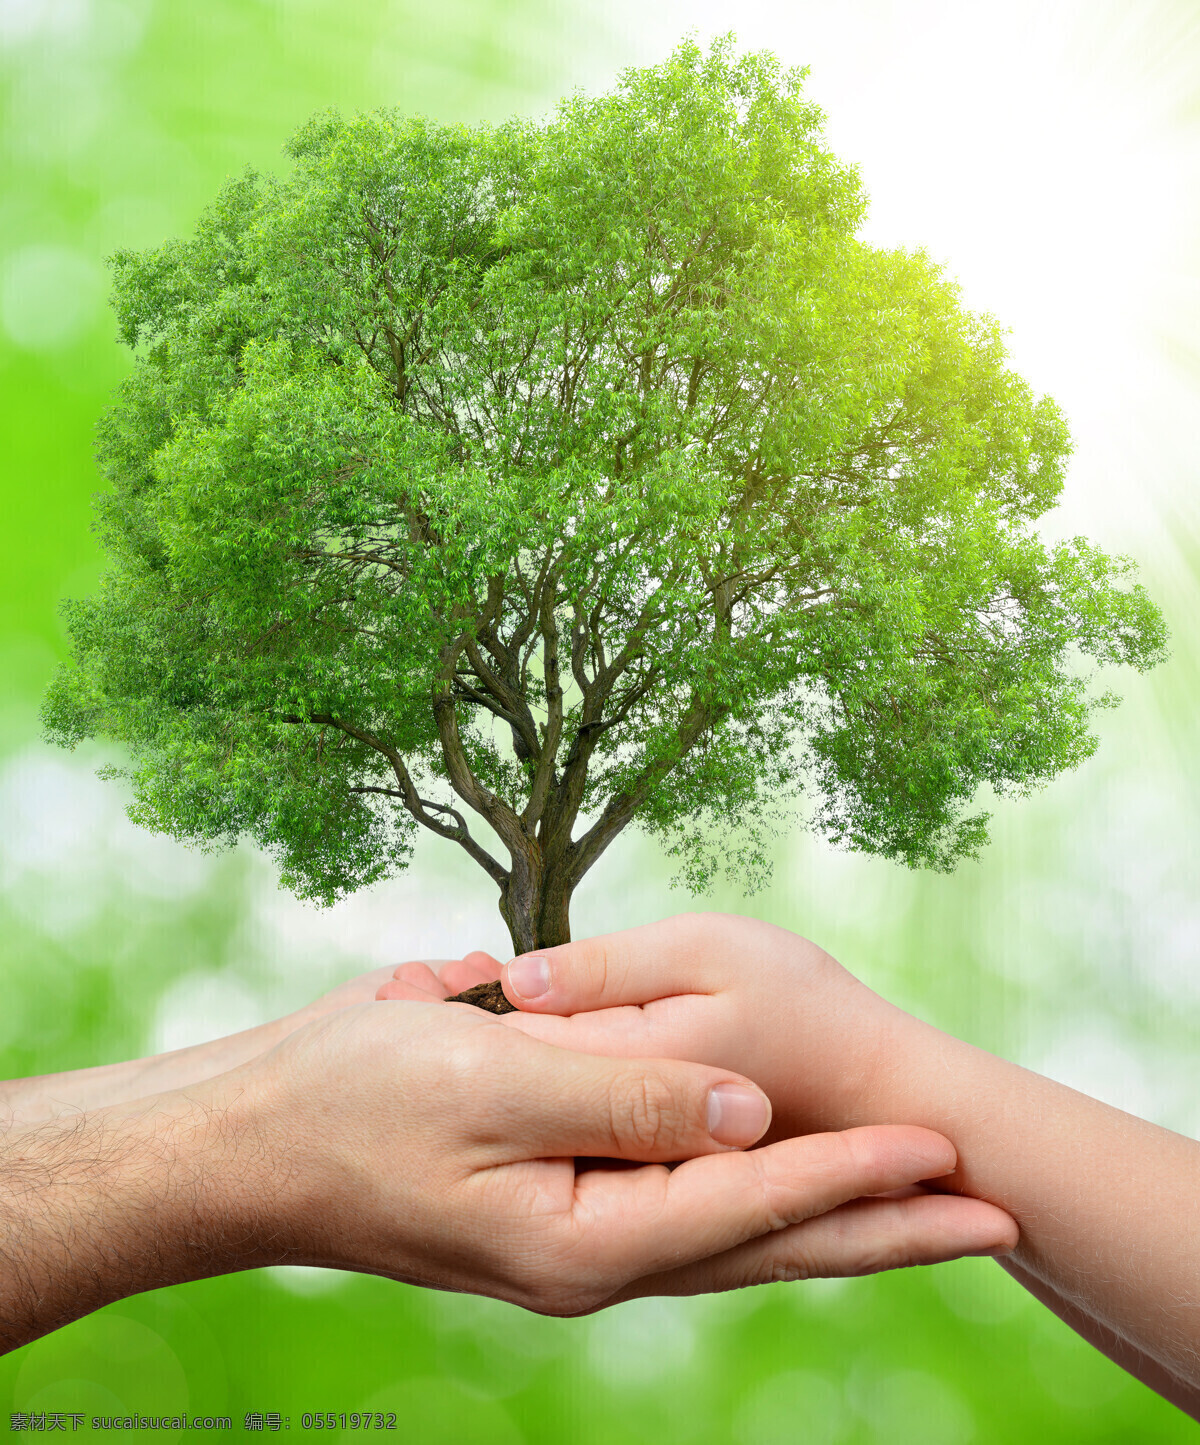 创意 呵护 树木 手势 高清 环境保护 手 捧 爱心 手捧着 土壤 爱心树木 桃心树木 绿色环保 自然景观